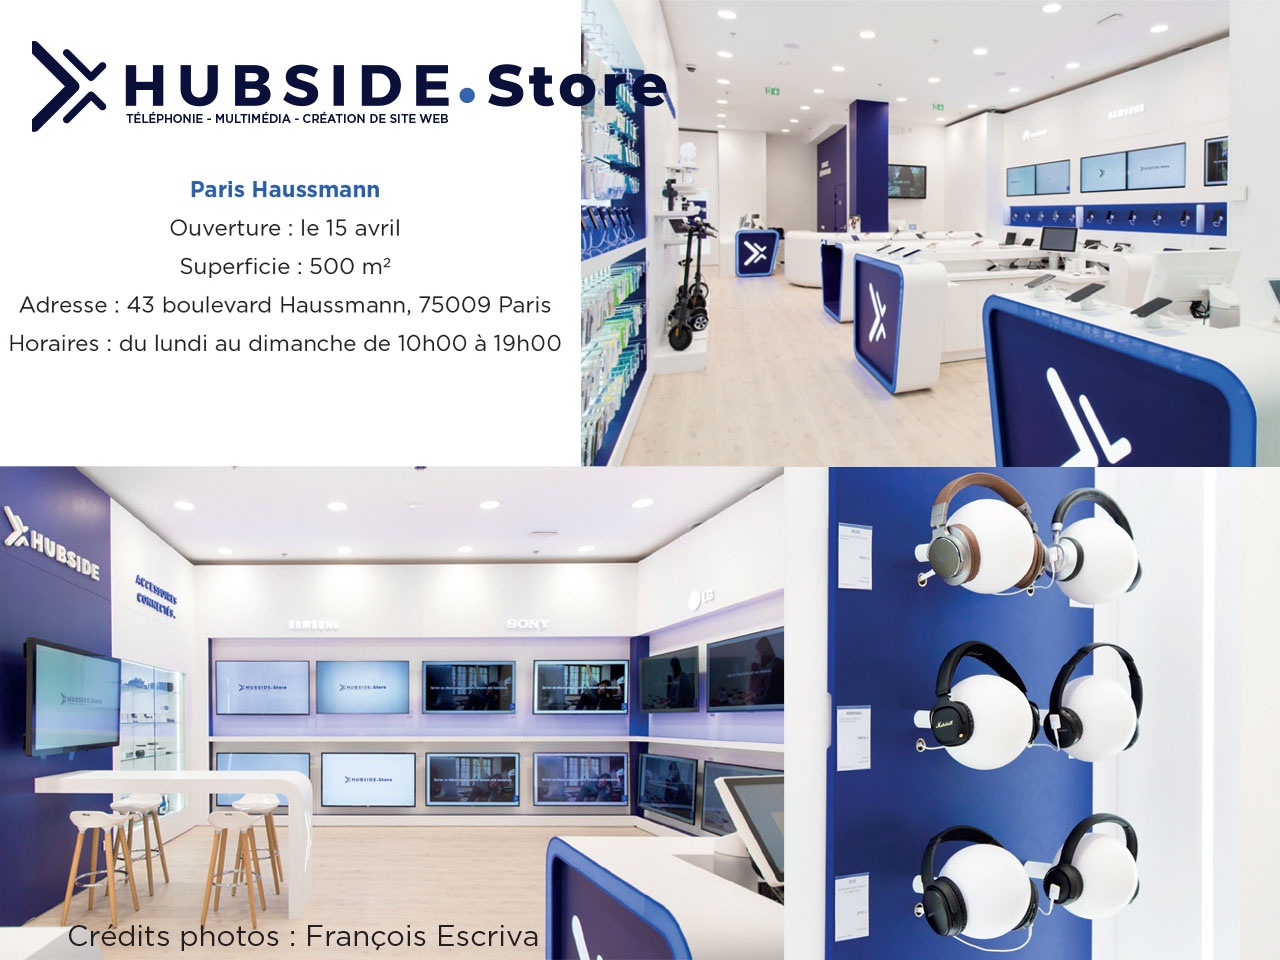 Hubside.Store ouvre son 1er flagship en plein coeur de la capitale, Boulevard Haussmann